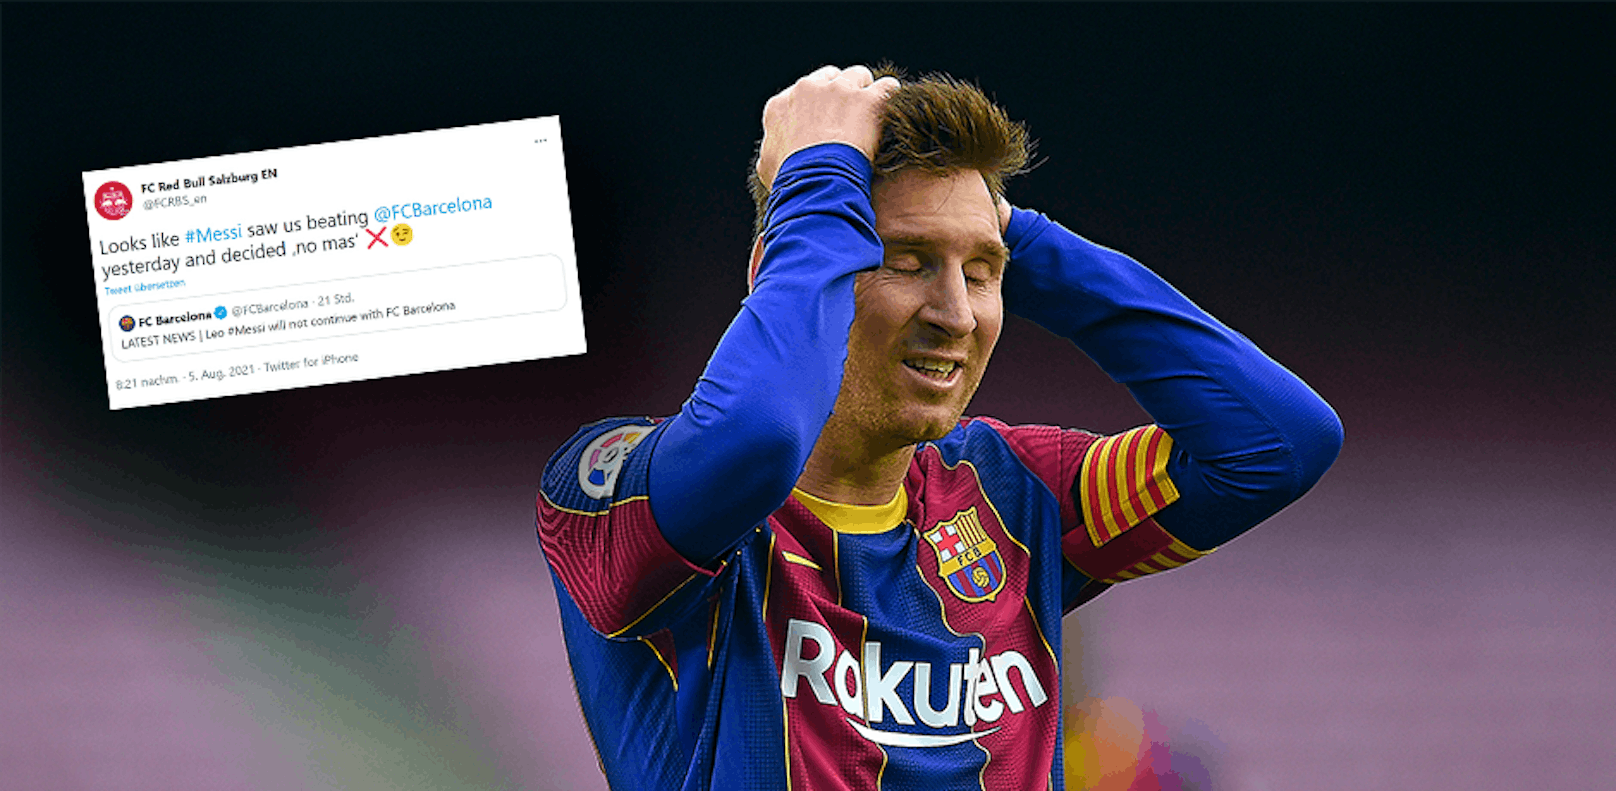 Der Tweet von Red Bull Salzburg nach dem Barcelona-Aus von Lionel Messi. 